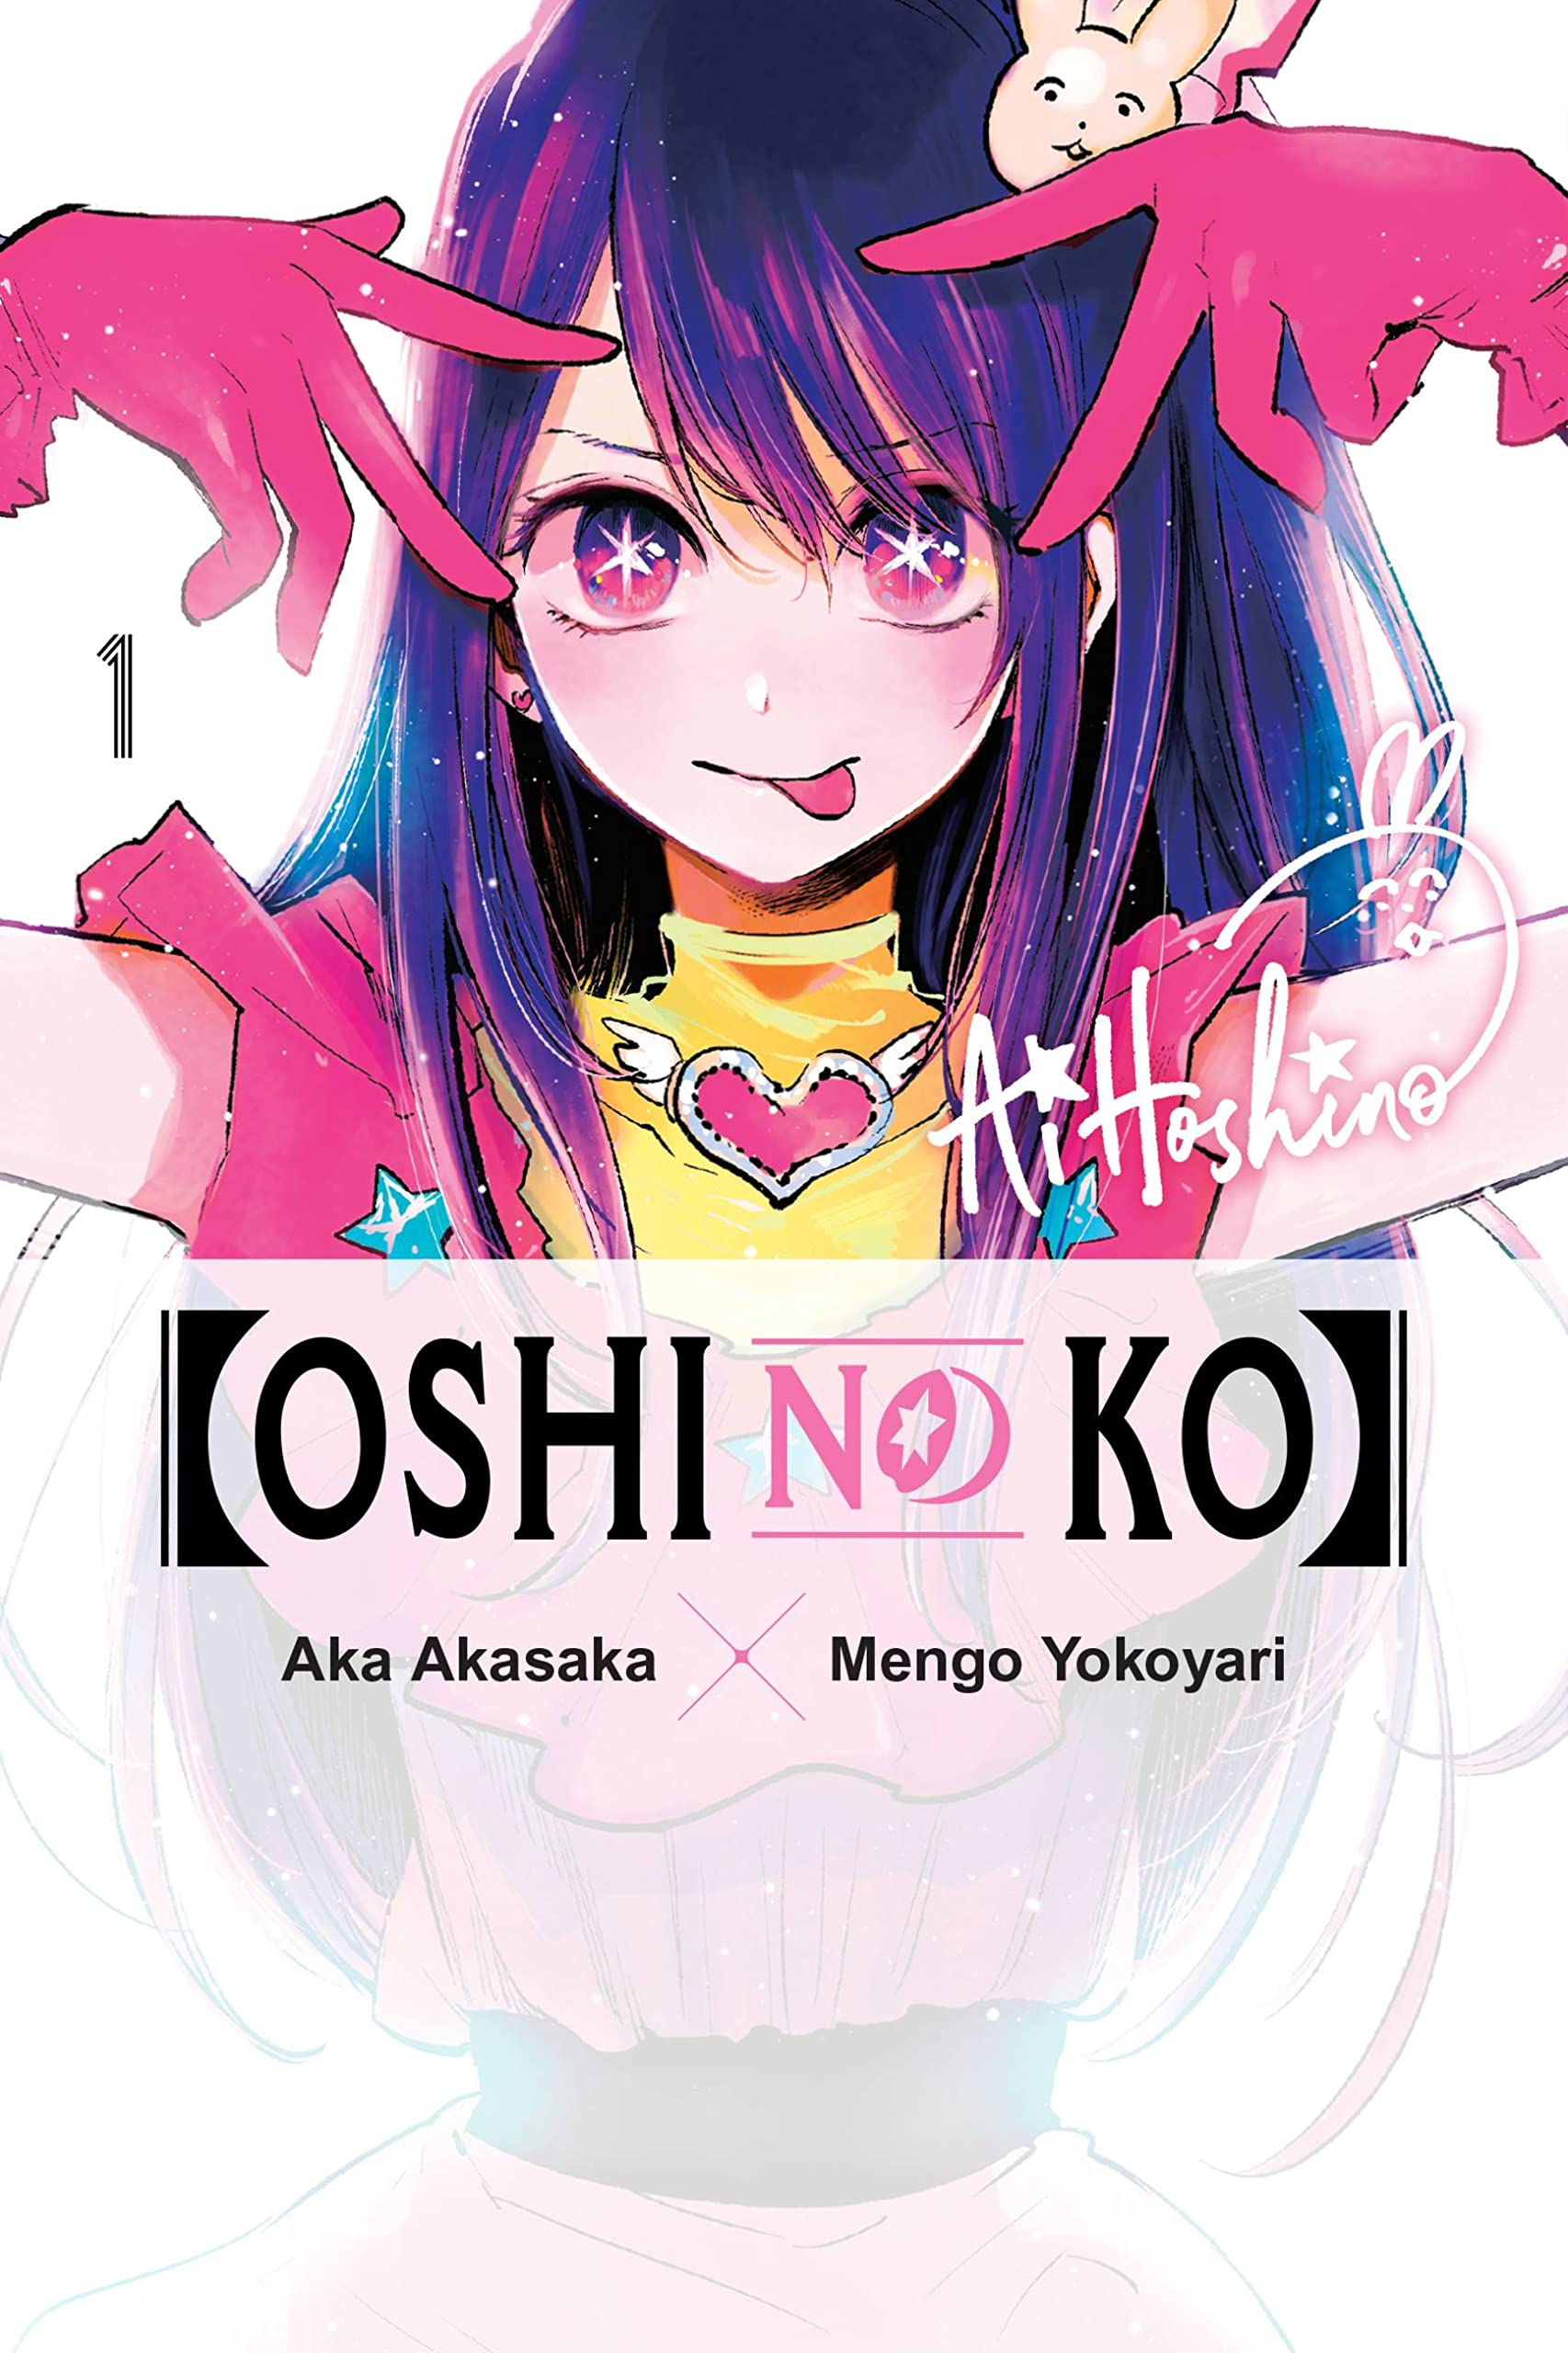 Oshi No Ko Volume 1 Review Anime UK News